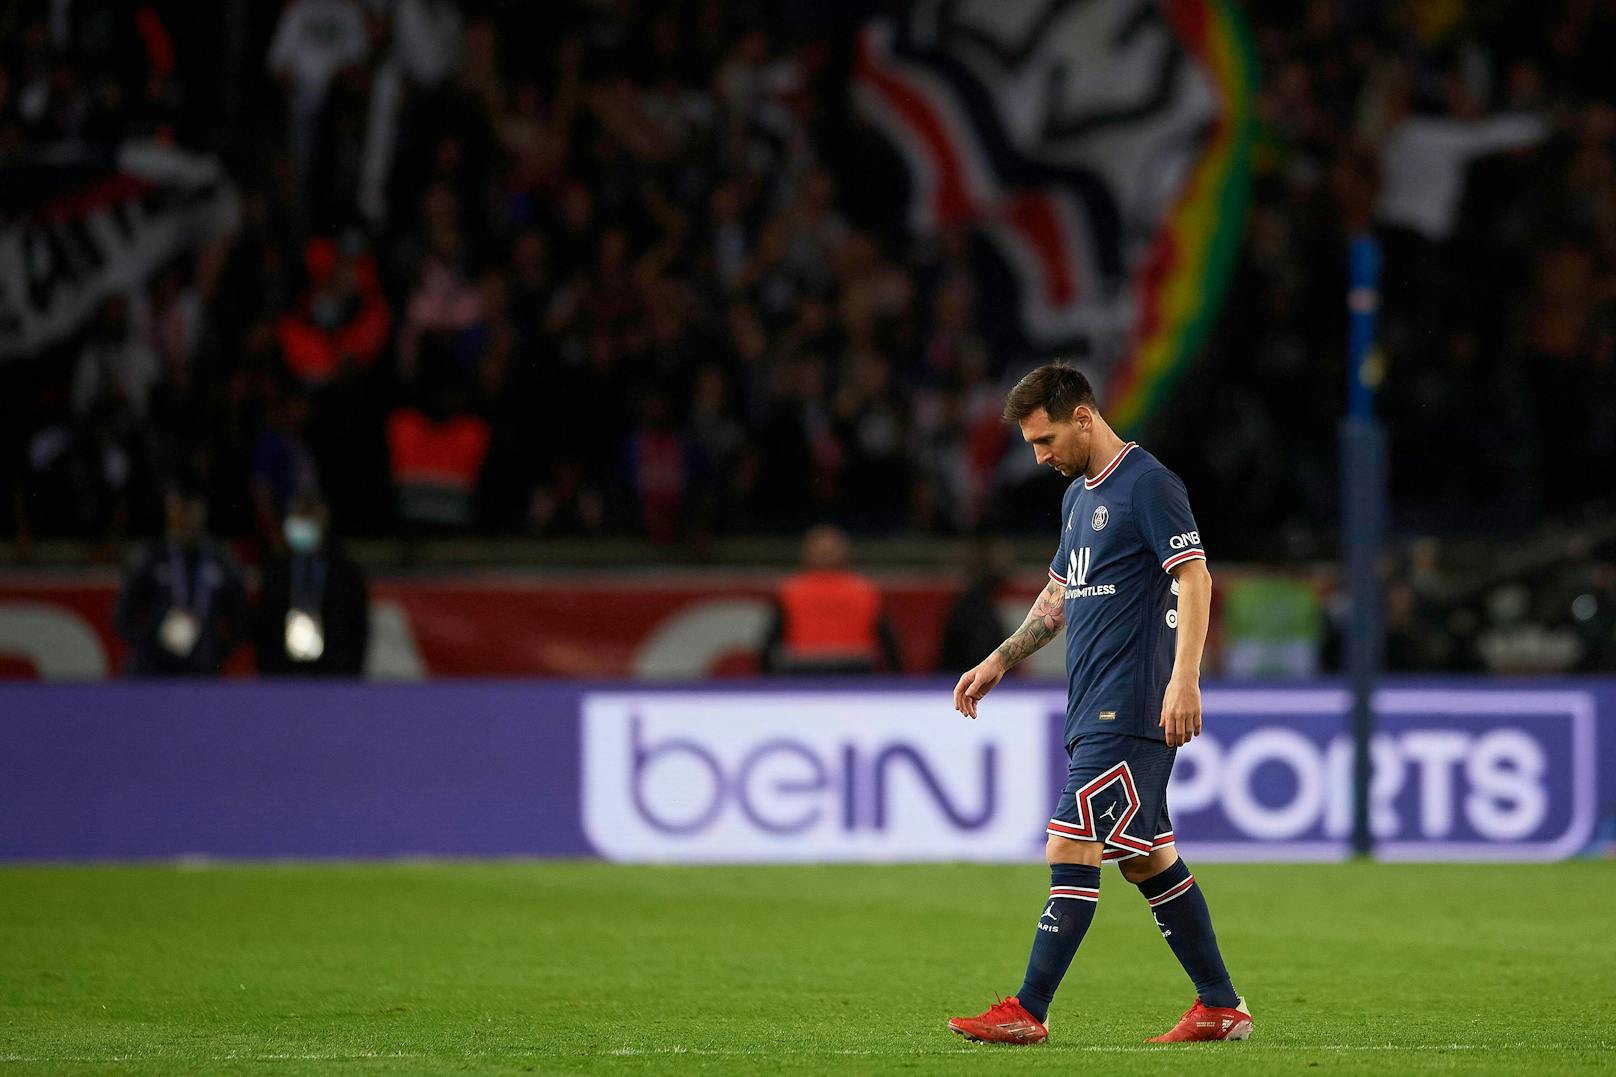 Sechs Spiele, sechs PSG-Siege – und doch ist Messi niedergeschlagen. Der Superstar wartet auf sein erstes Tor, wird nach 76 Minuten gegen Lyon ausgetauscht.